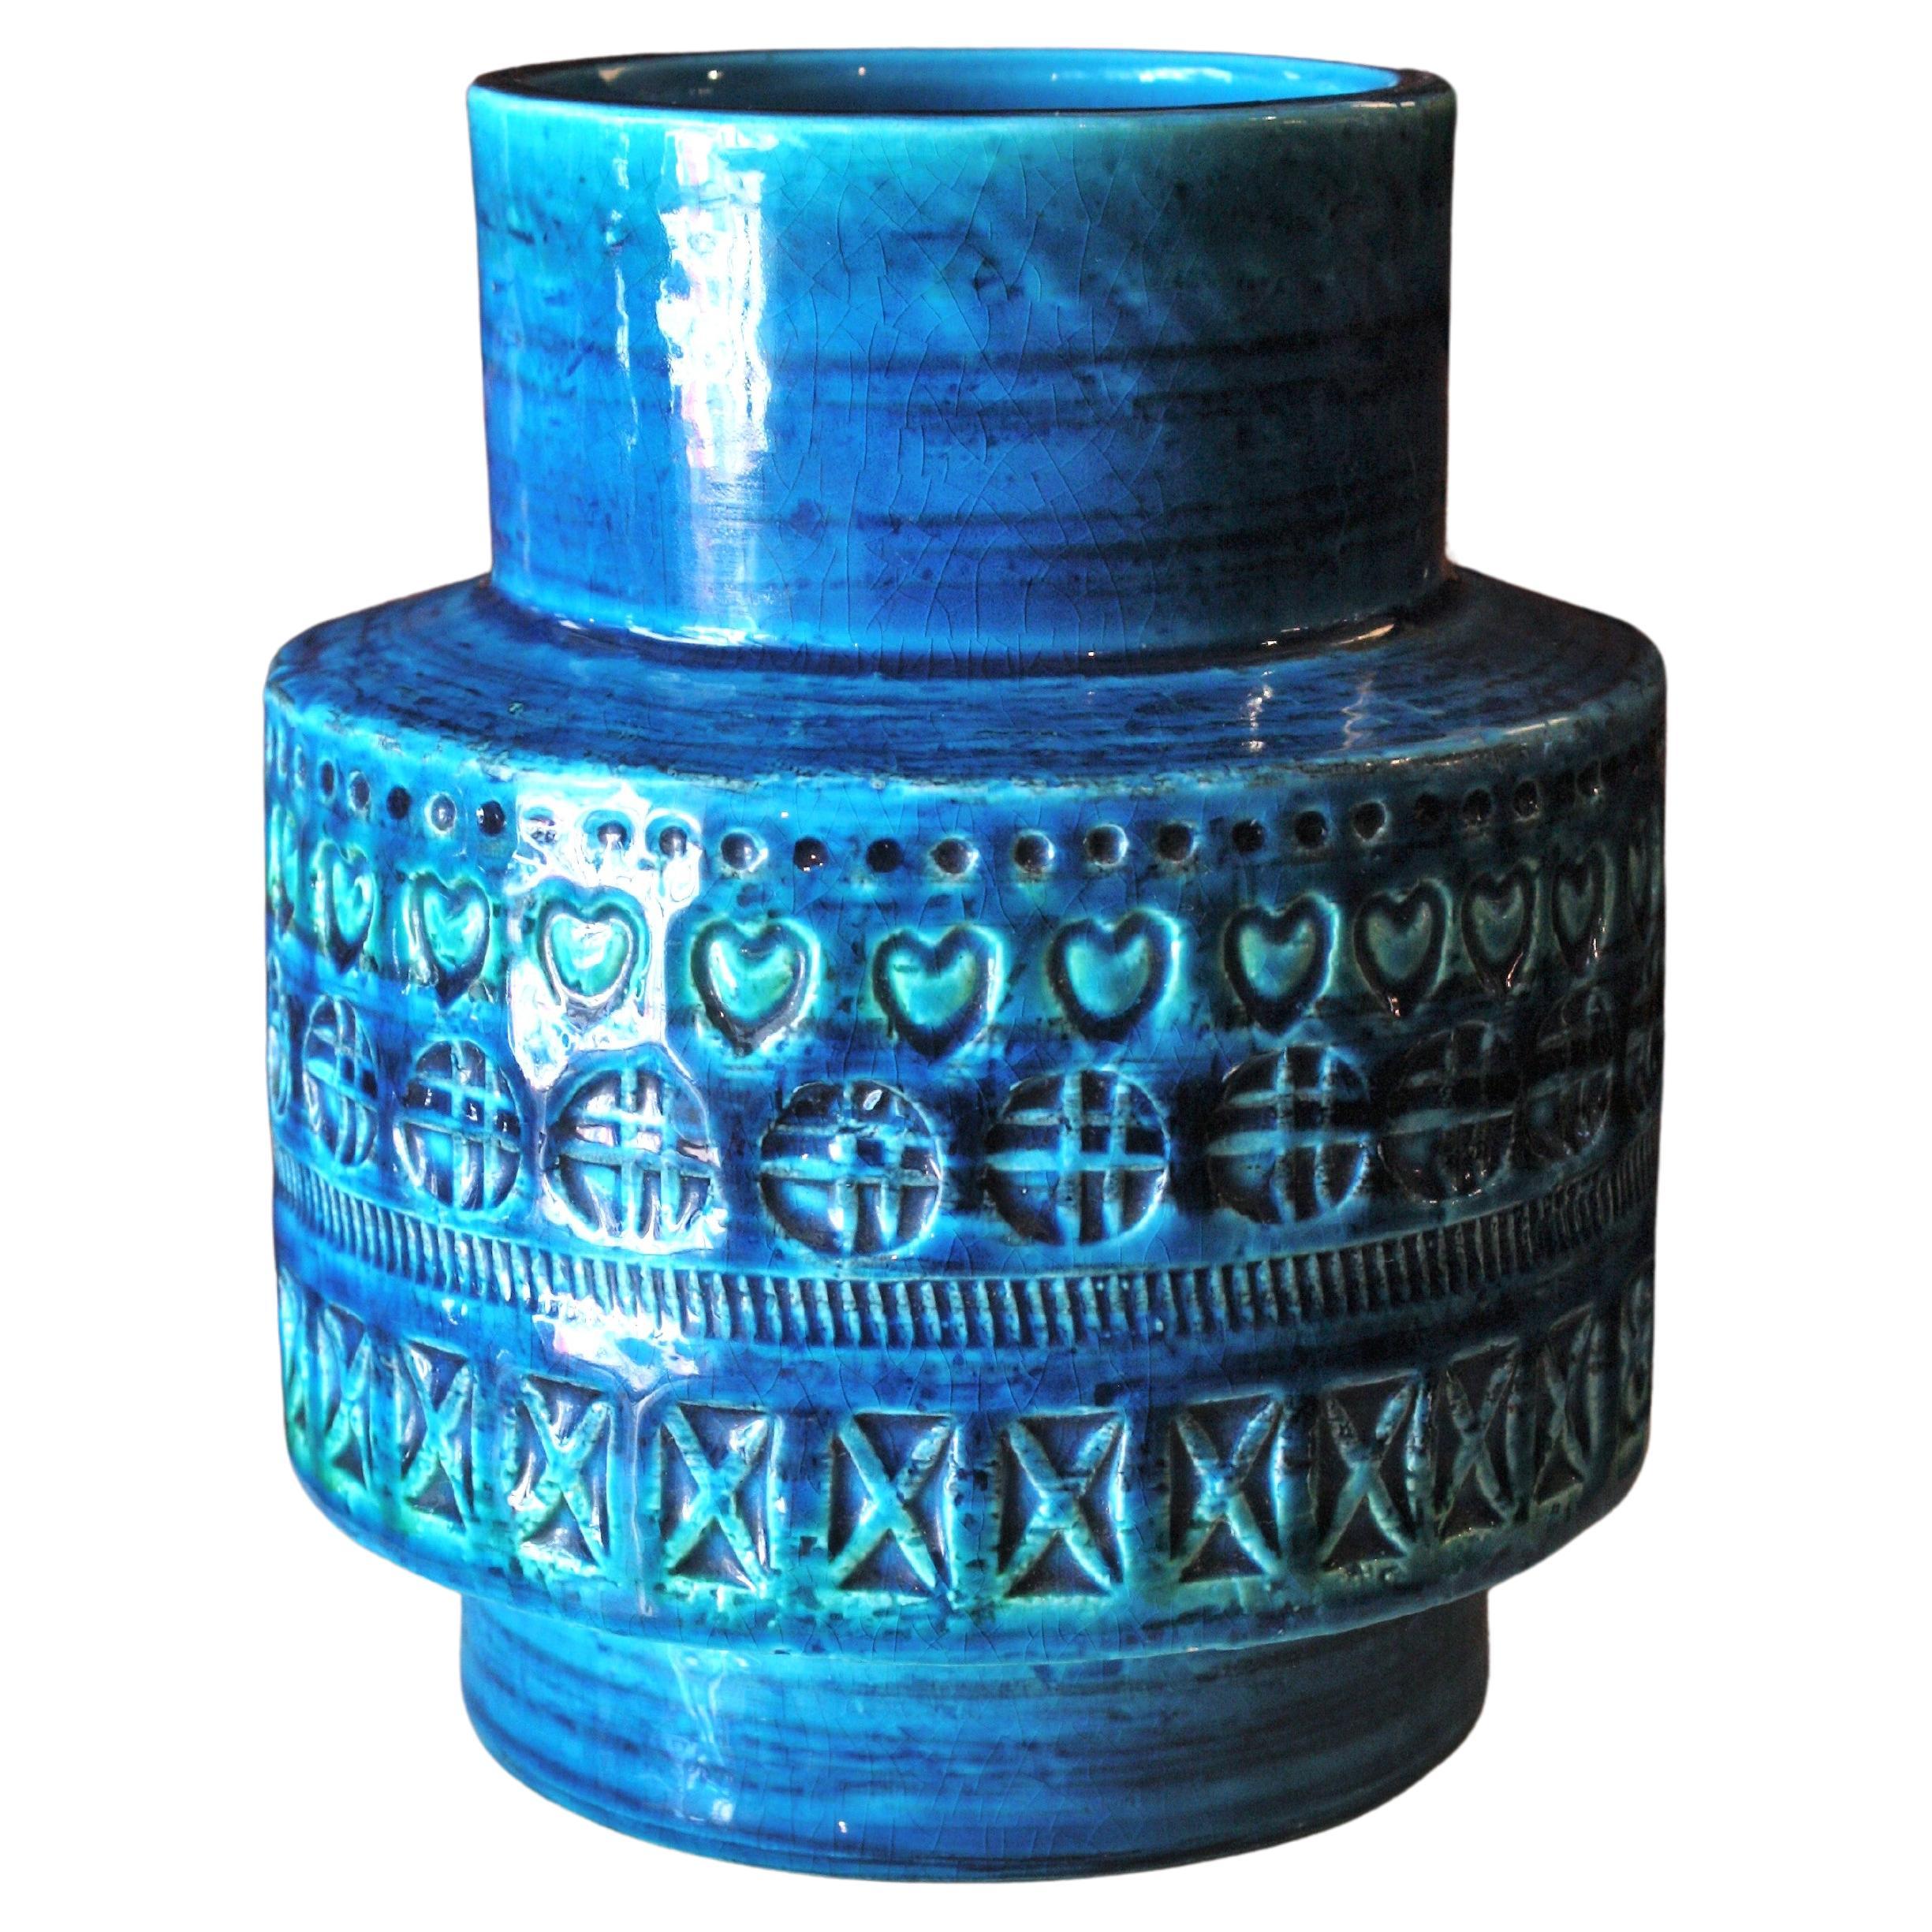 Midcentury Bitossi Aldo Londi Rimini Blue Glazed Ceramic Vase For Sale